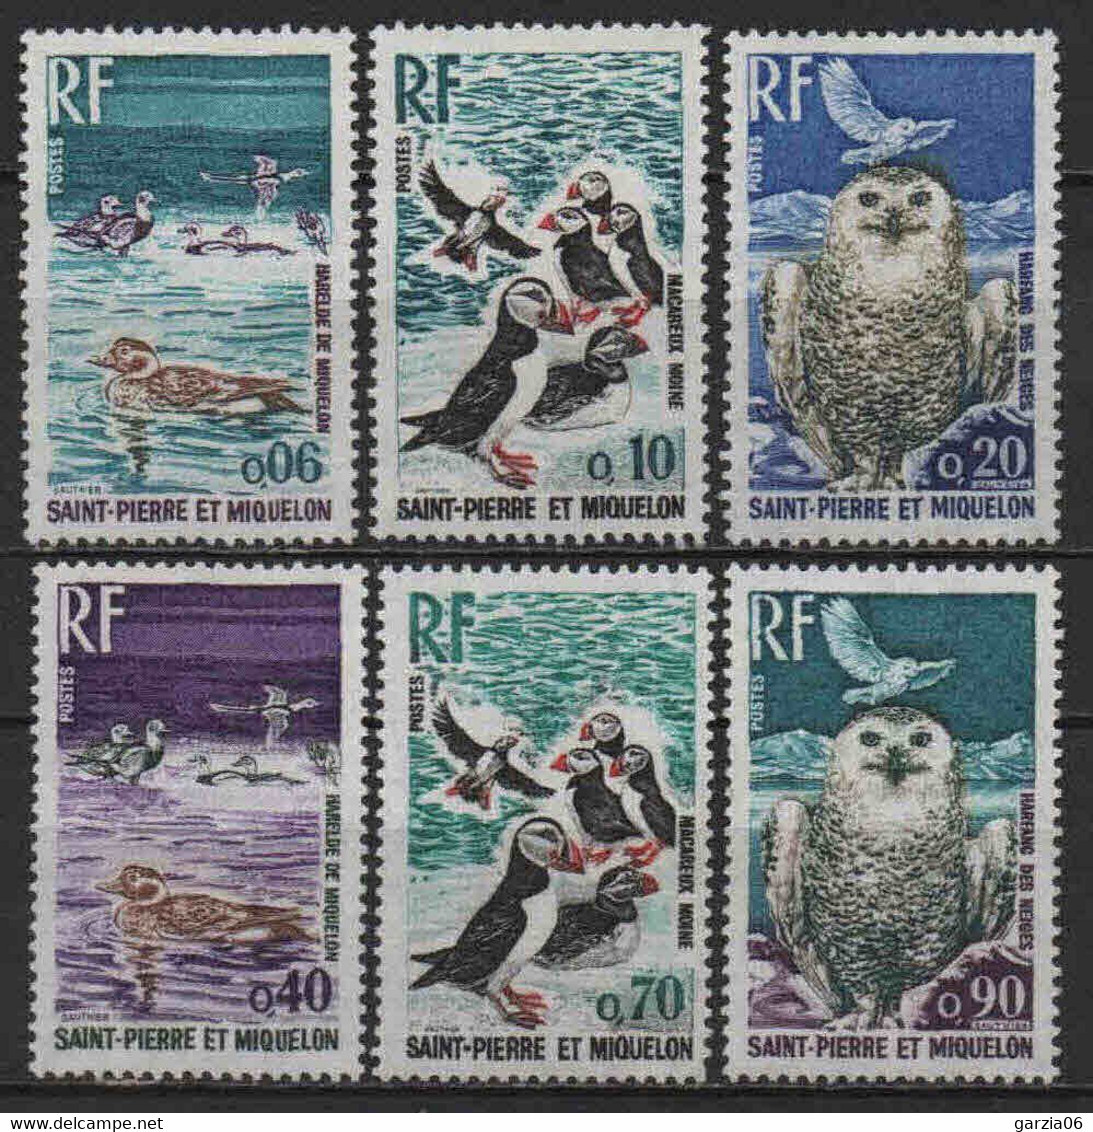 St Pierre Et Miquelon  - 1973  - Oiseaux  - N° 425 à 430  - Neufs ** MNH - Nuovi